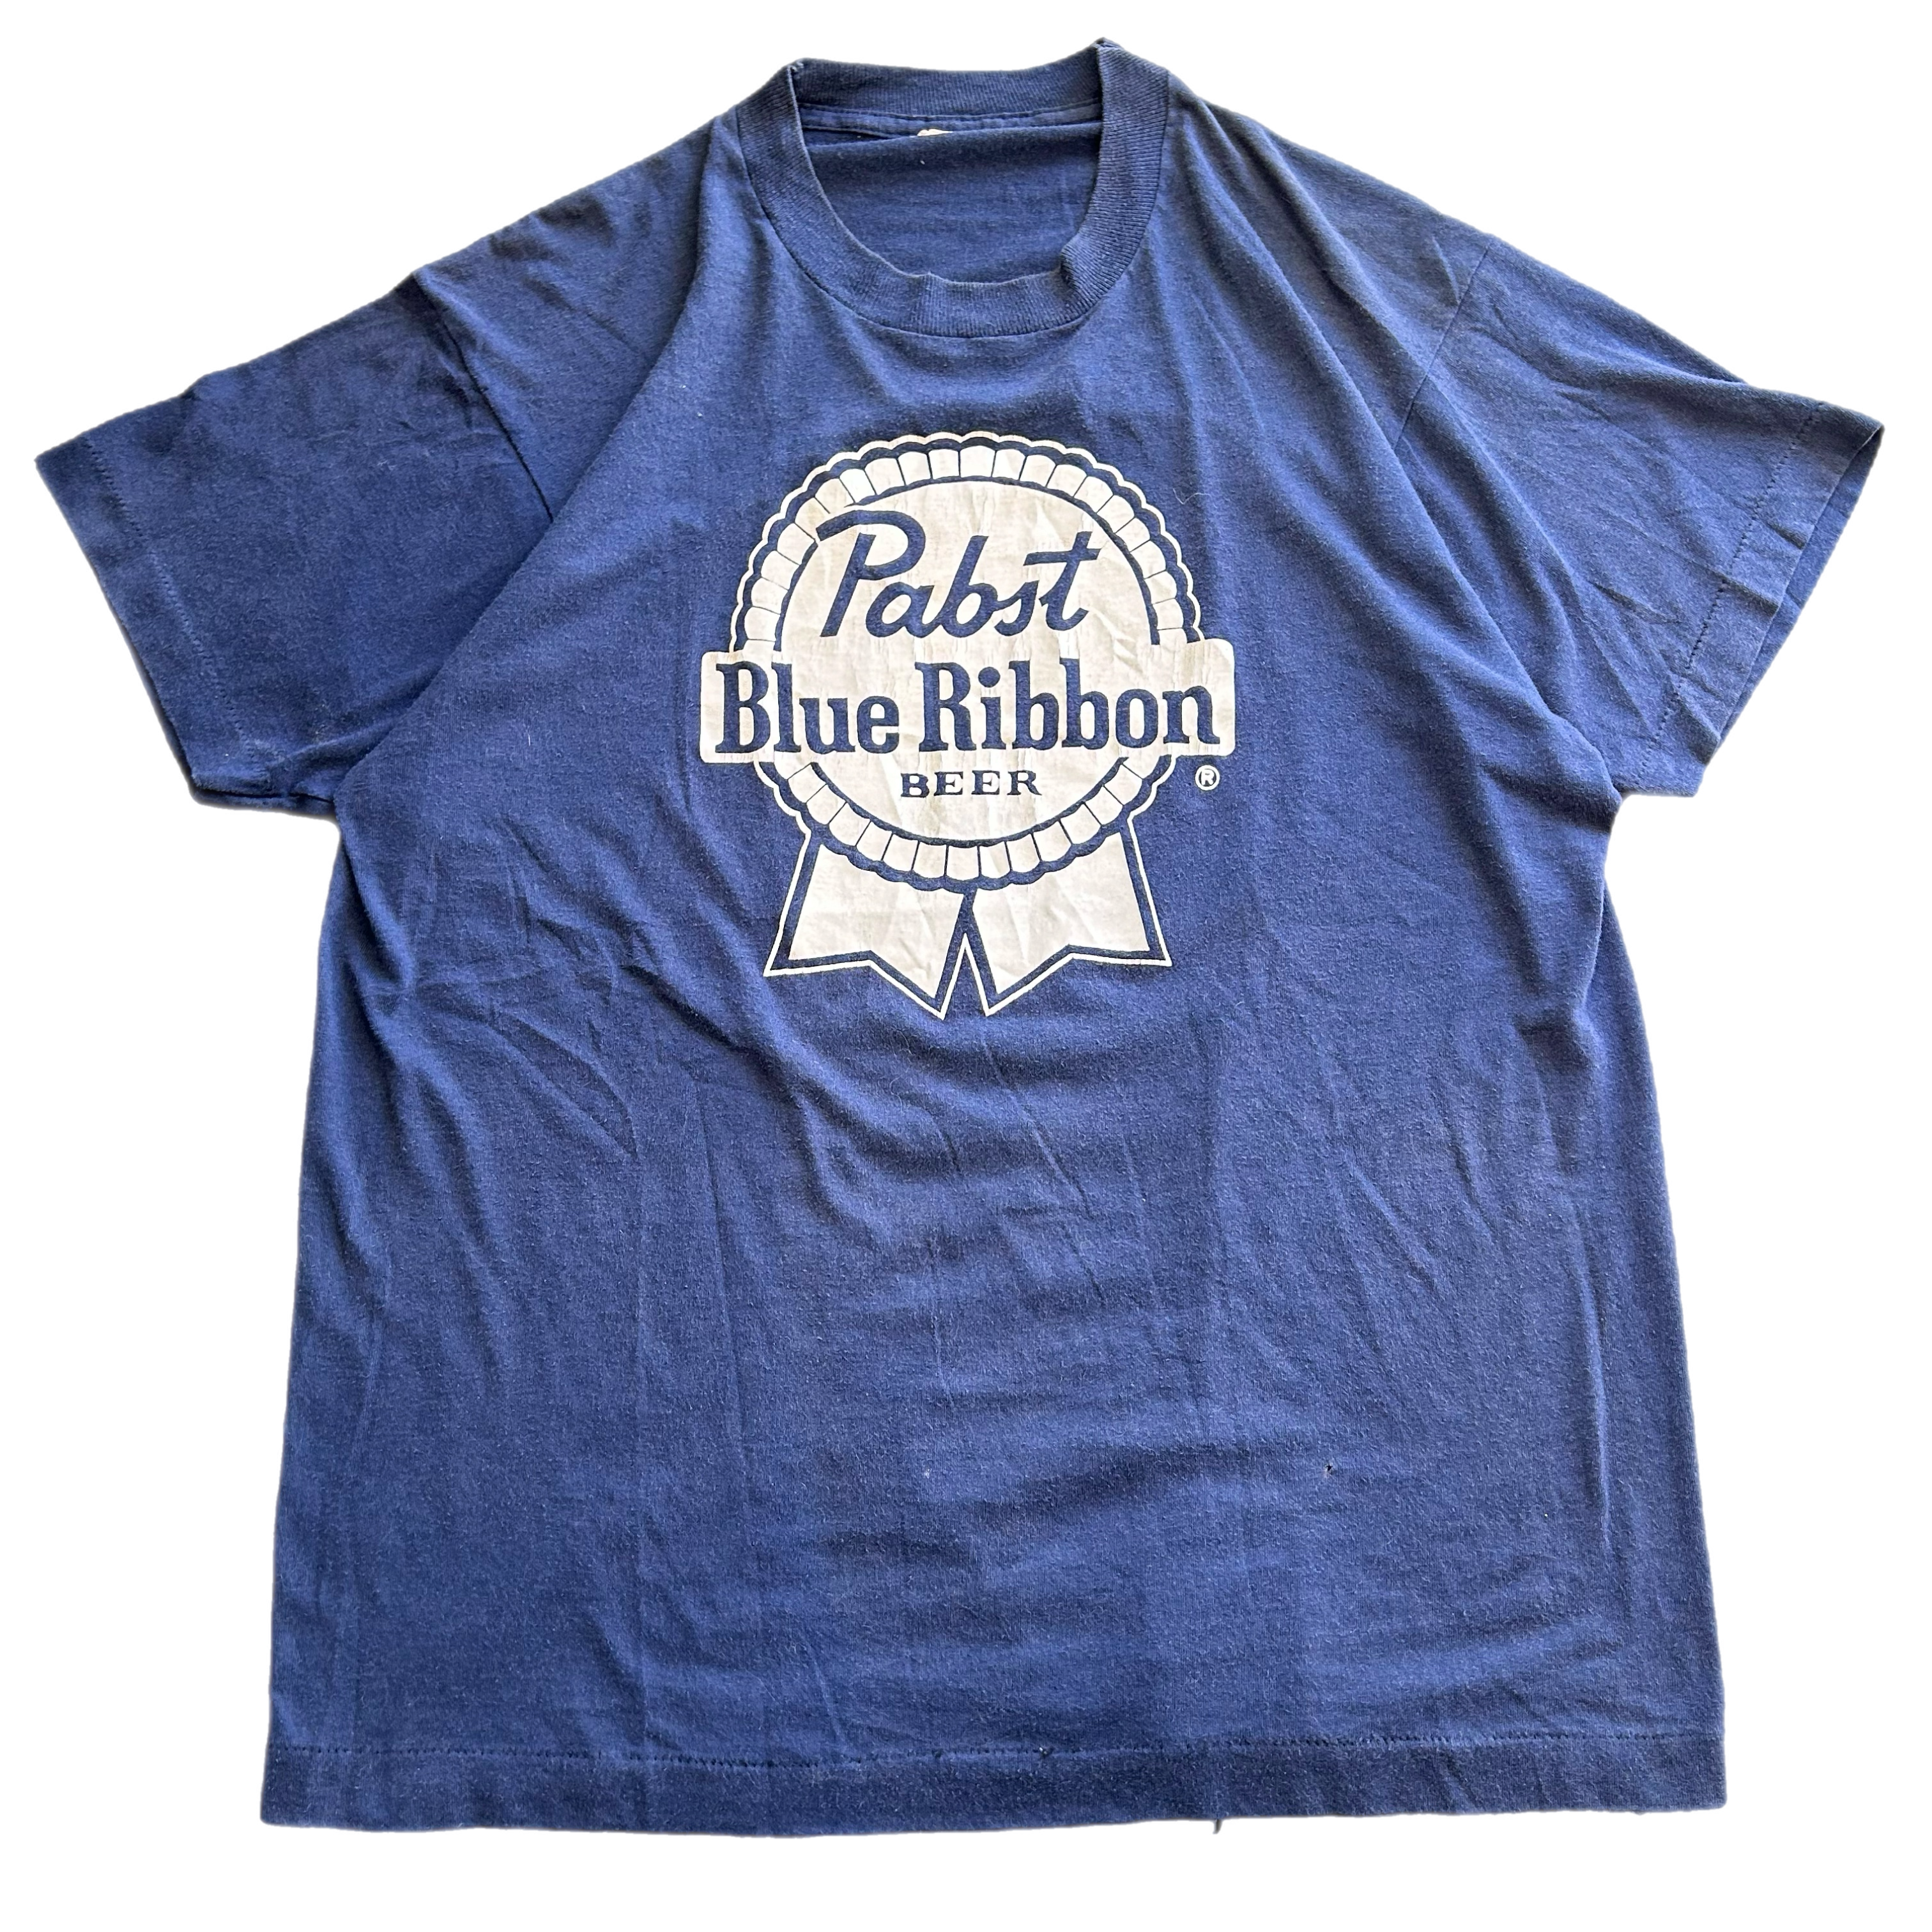 Vintage 1980’s Pabst Blue Ribbon Beer Tee